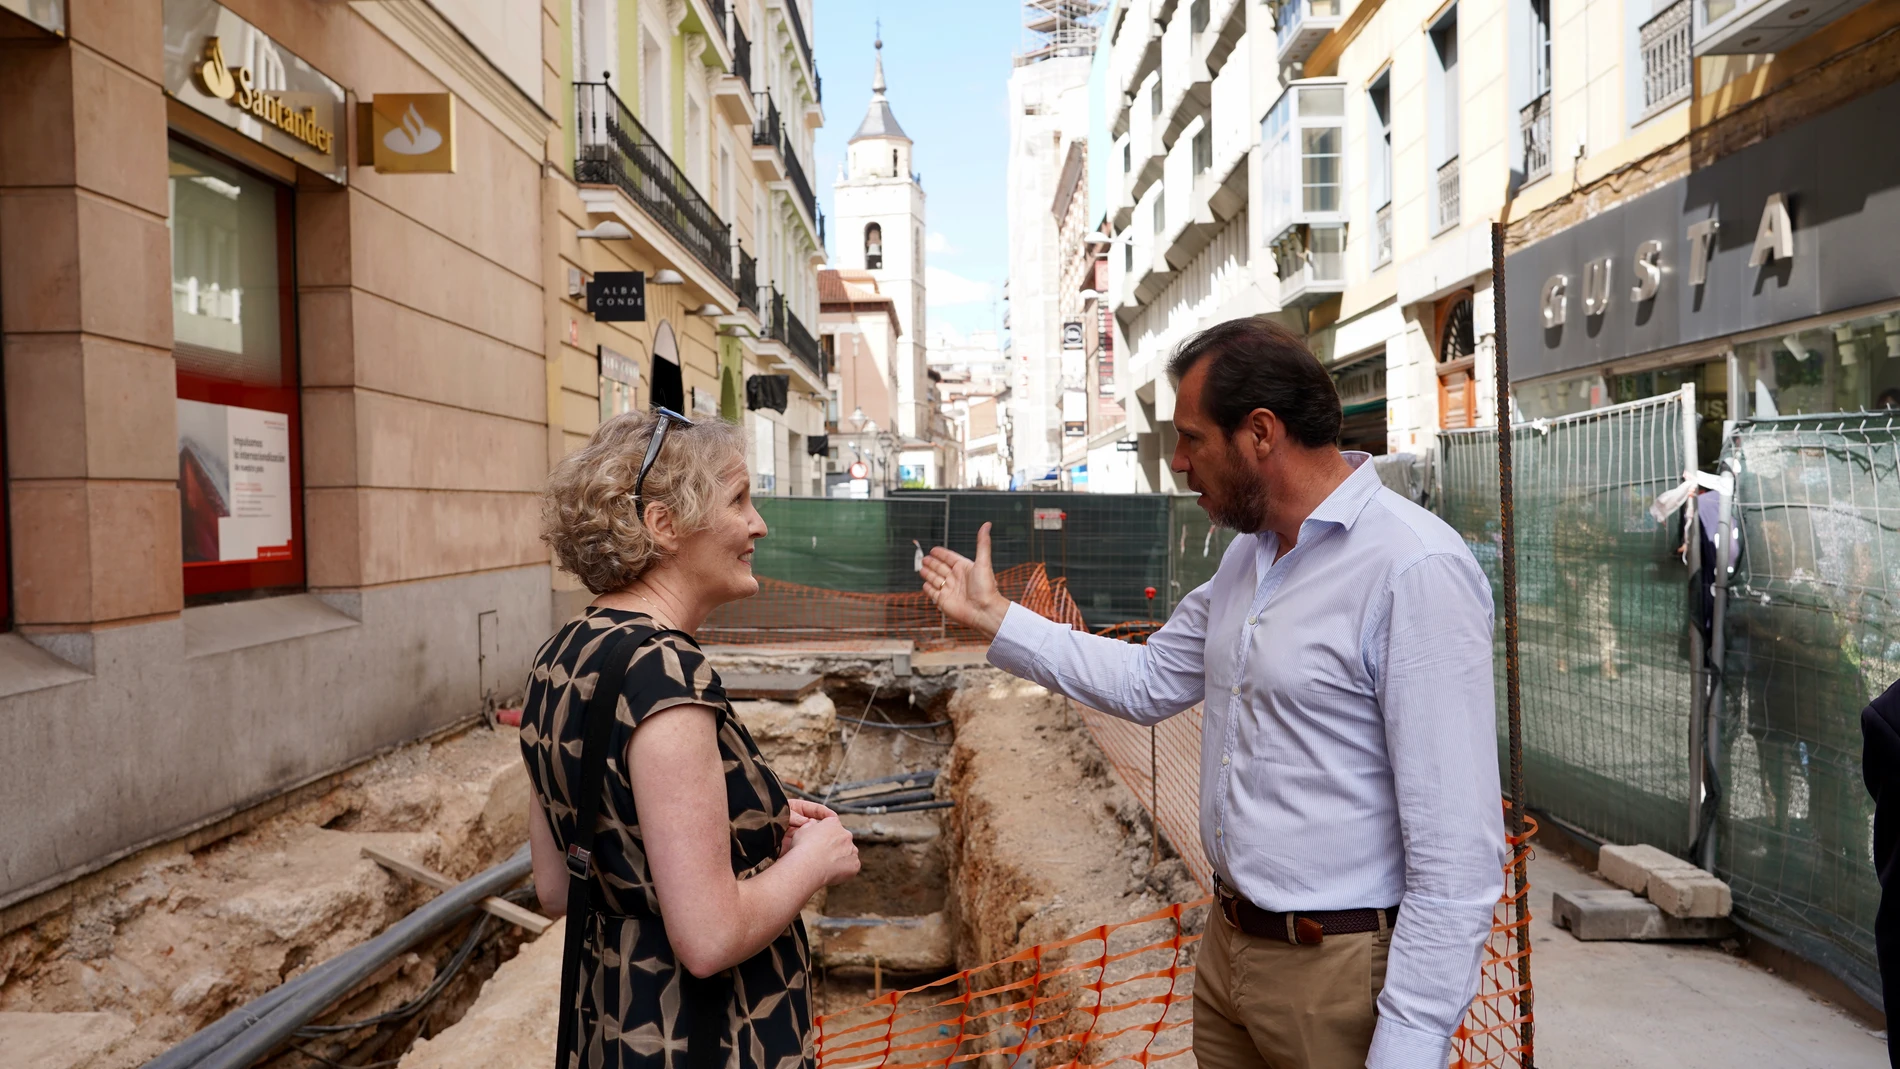 El alcalde de Valladolid, Óscar Puente, visita junto a la embajadora de Irlanda, Síle Maguire, las excavaciones llevadas a cabo en la calle Constitución para localizar los restos de Red Hugh O''Donell